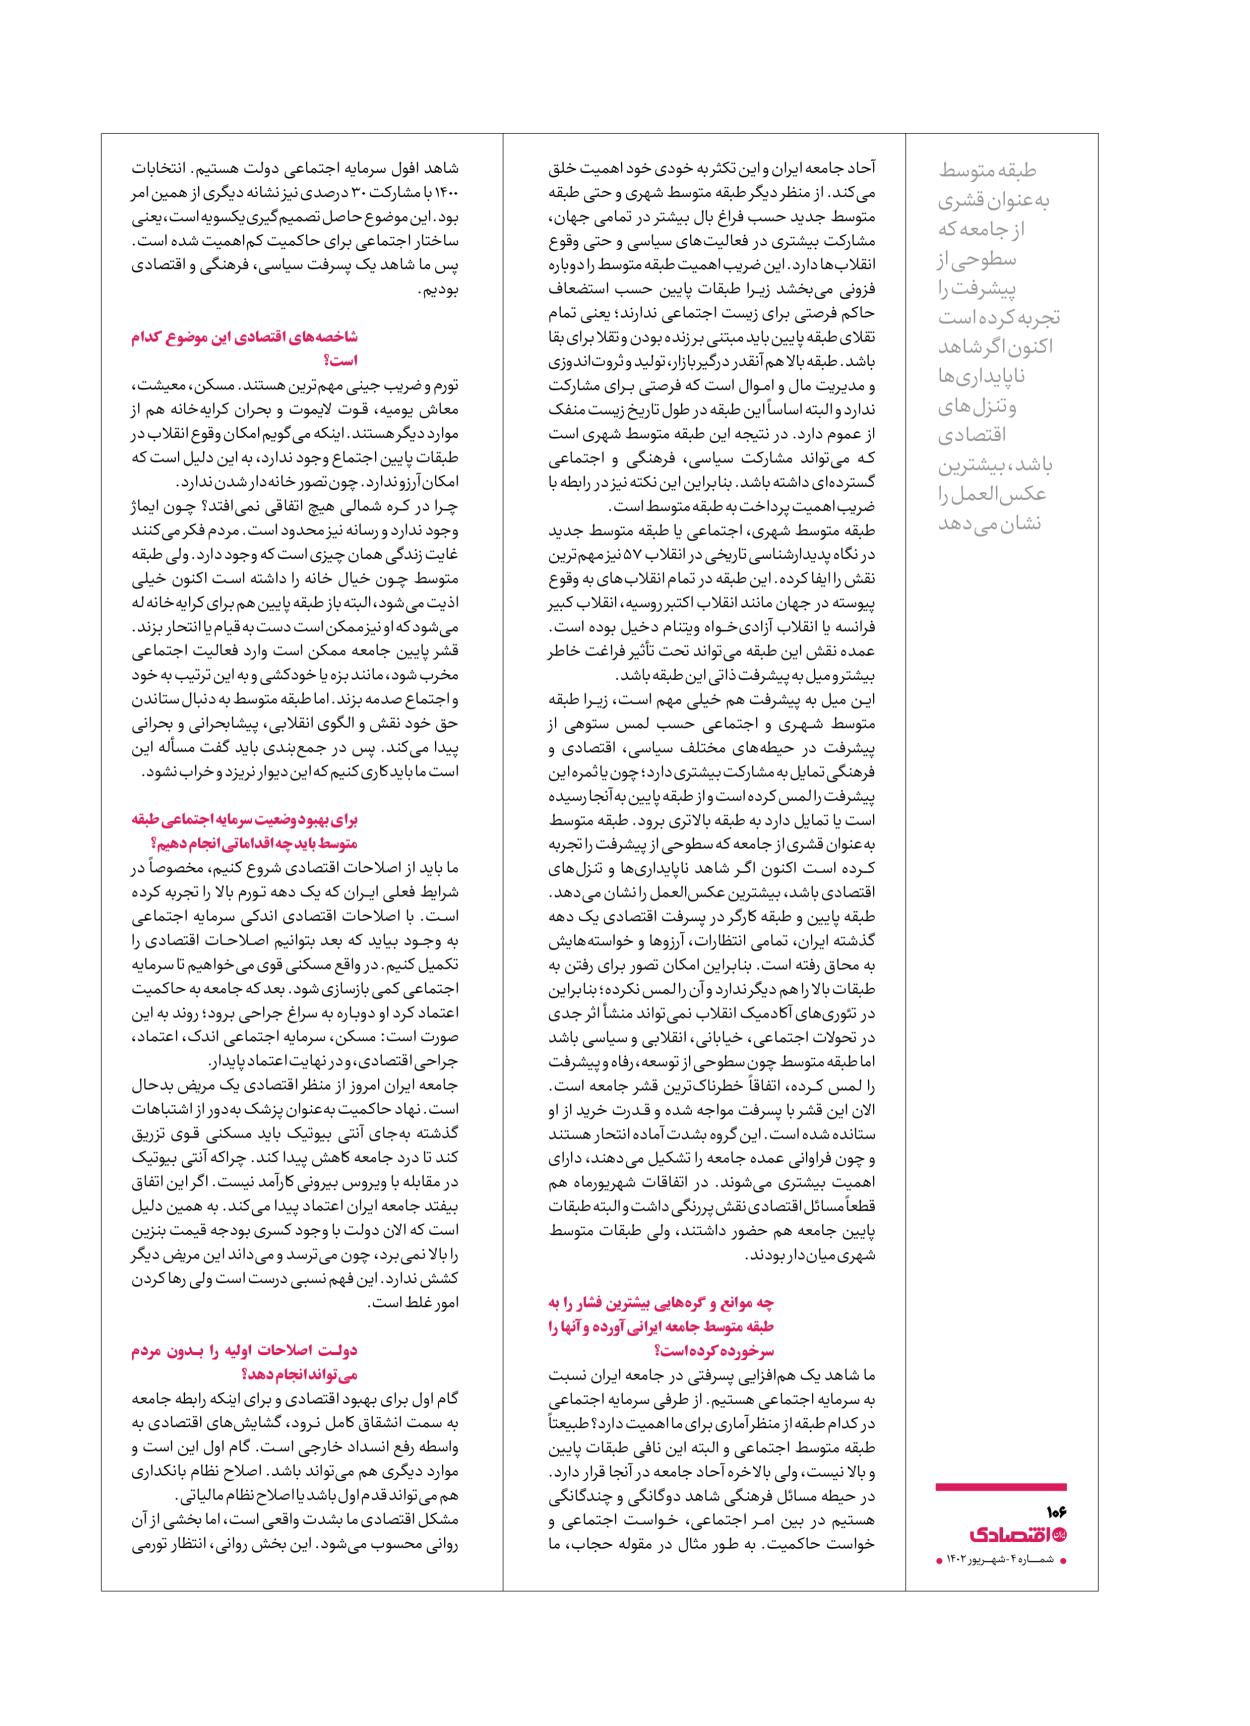 روزنامه ایران اقتصادی - ویژه نامه اقتصادی۴ - ۰۴ شهریور ۱۴۰۲ - صفحه ۱۰۶